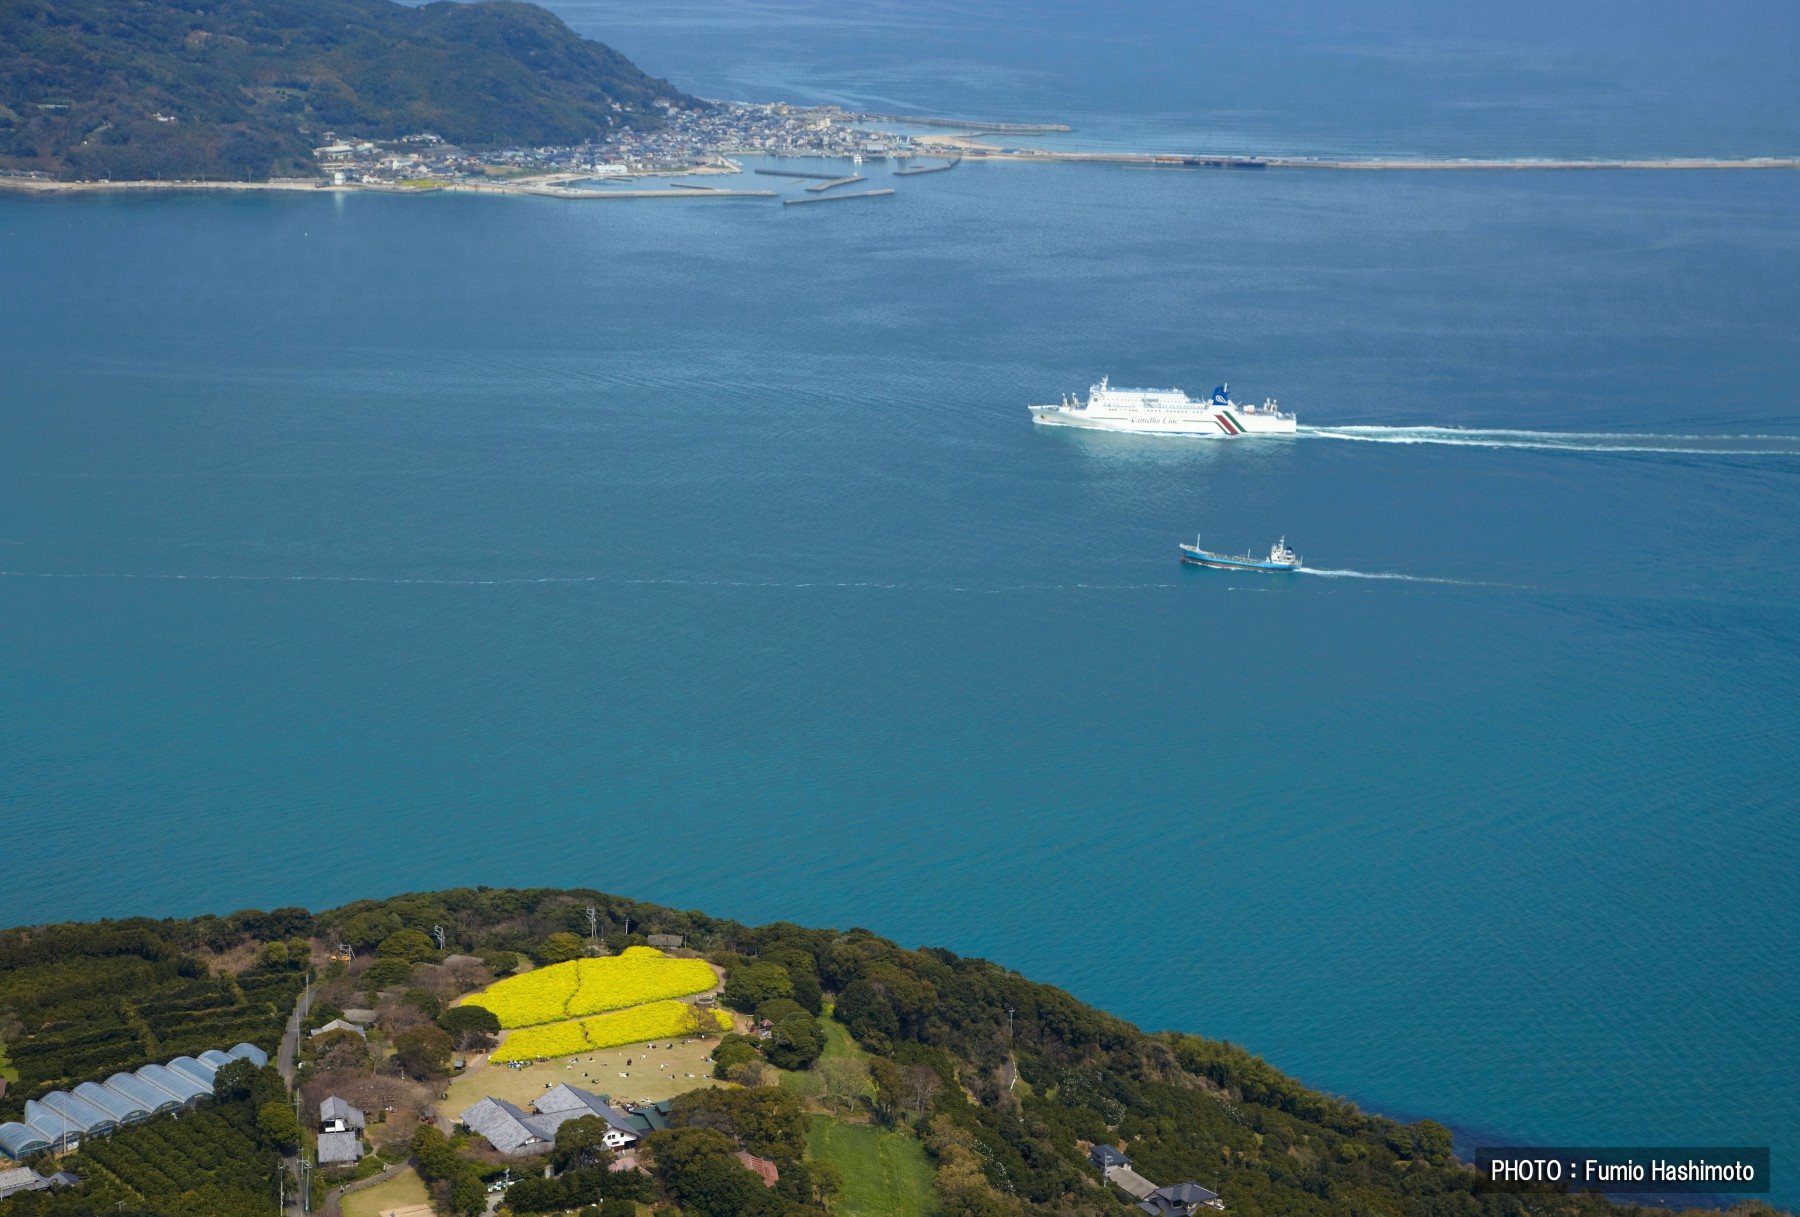 能古島と志賀島の間を韓国への客船が進む(2009)の画像